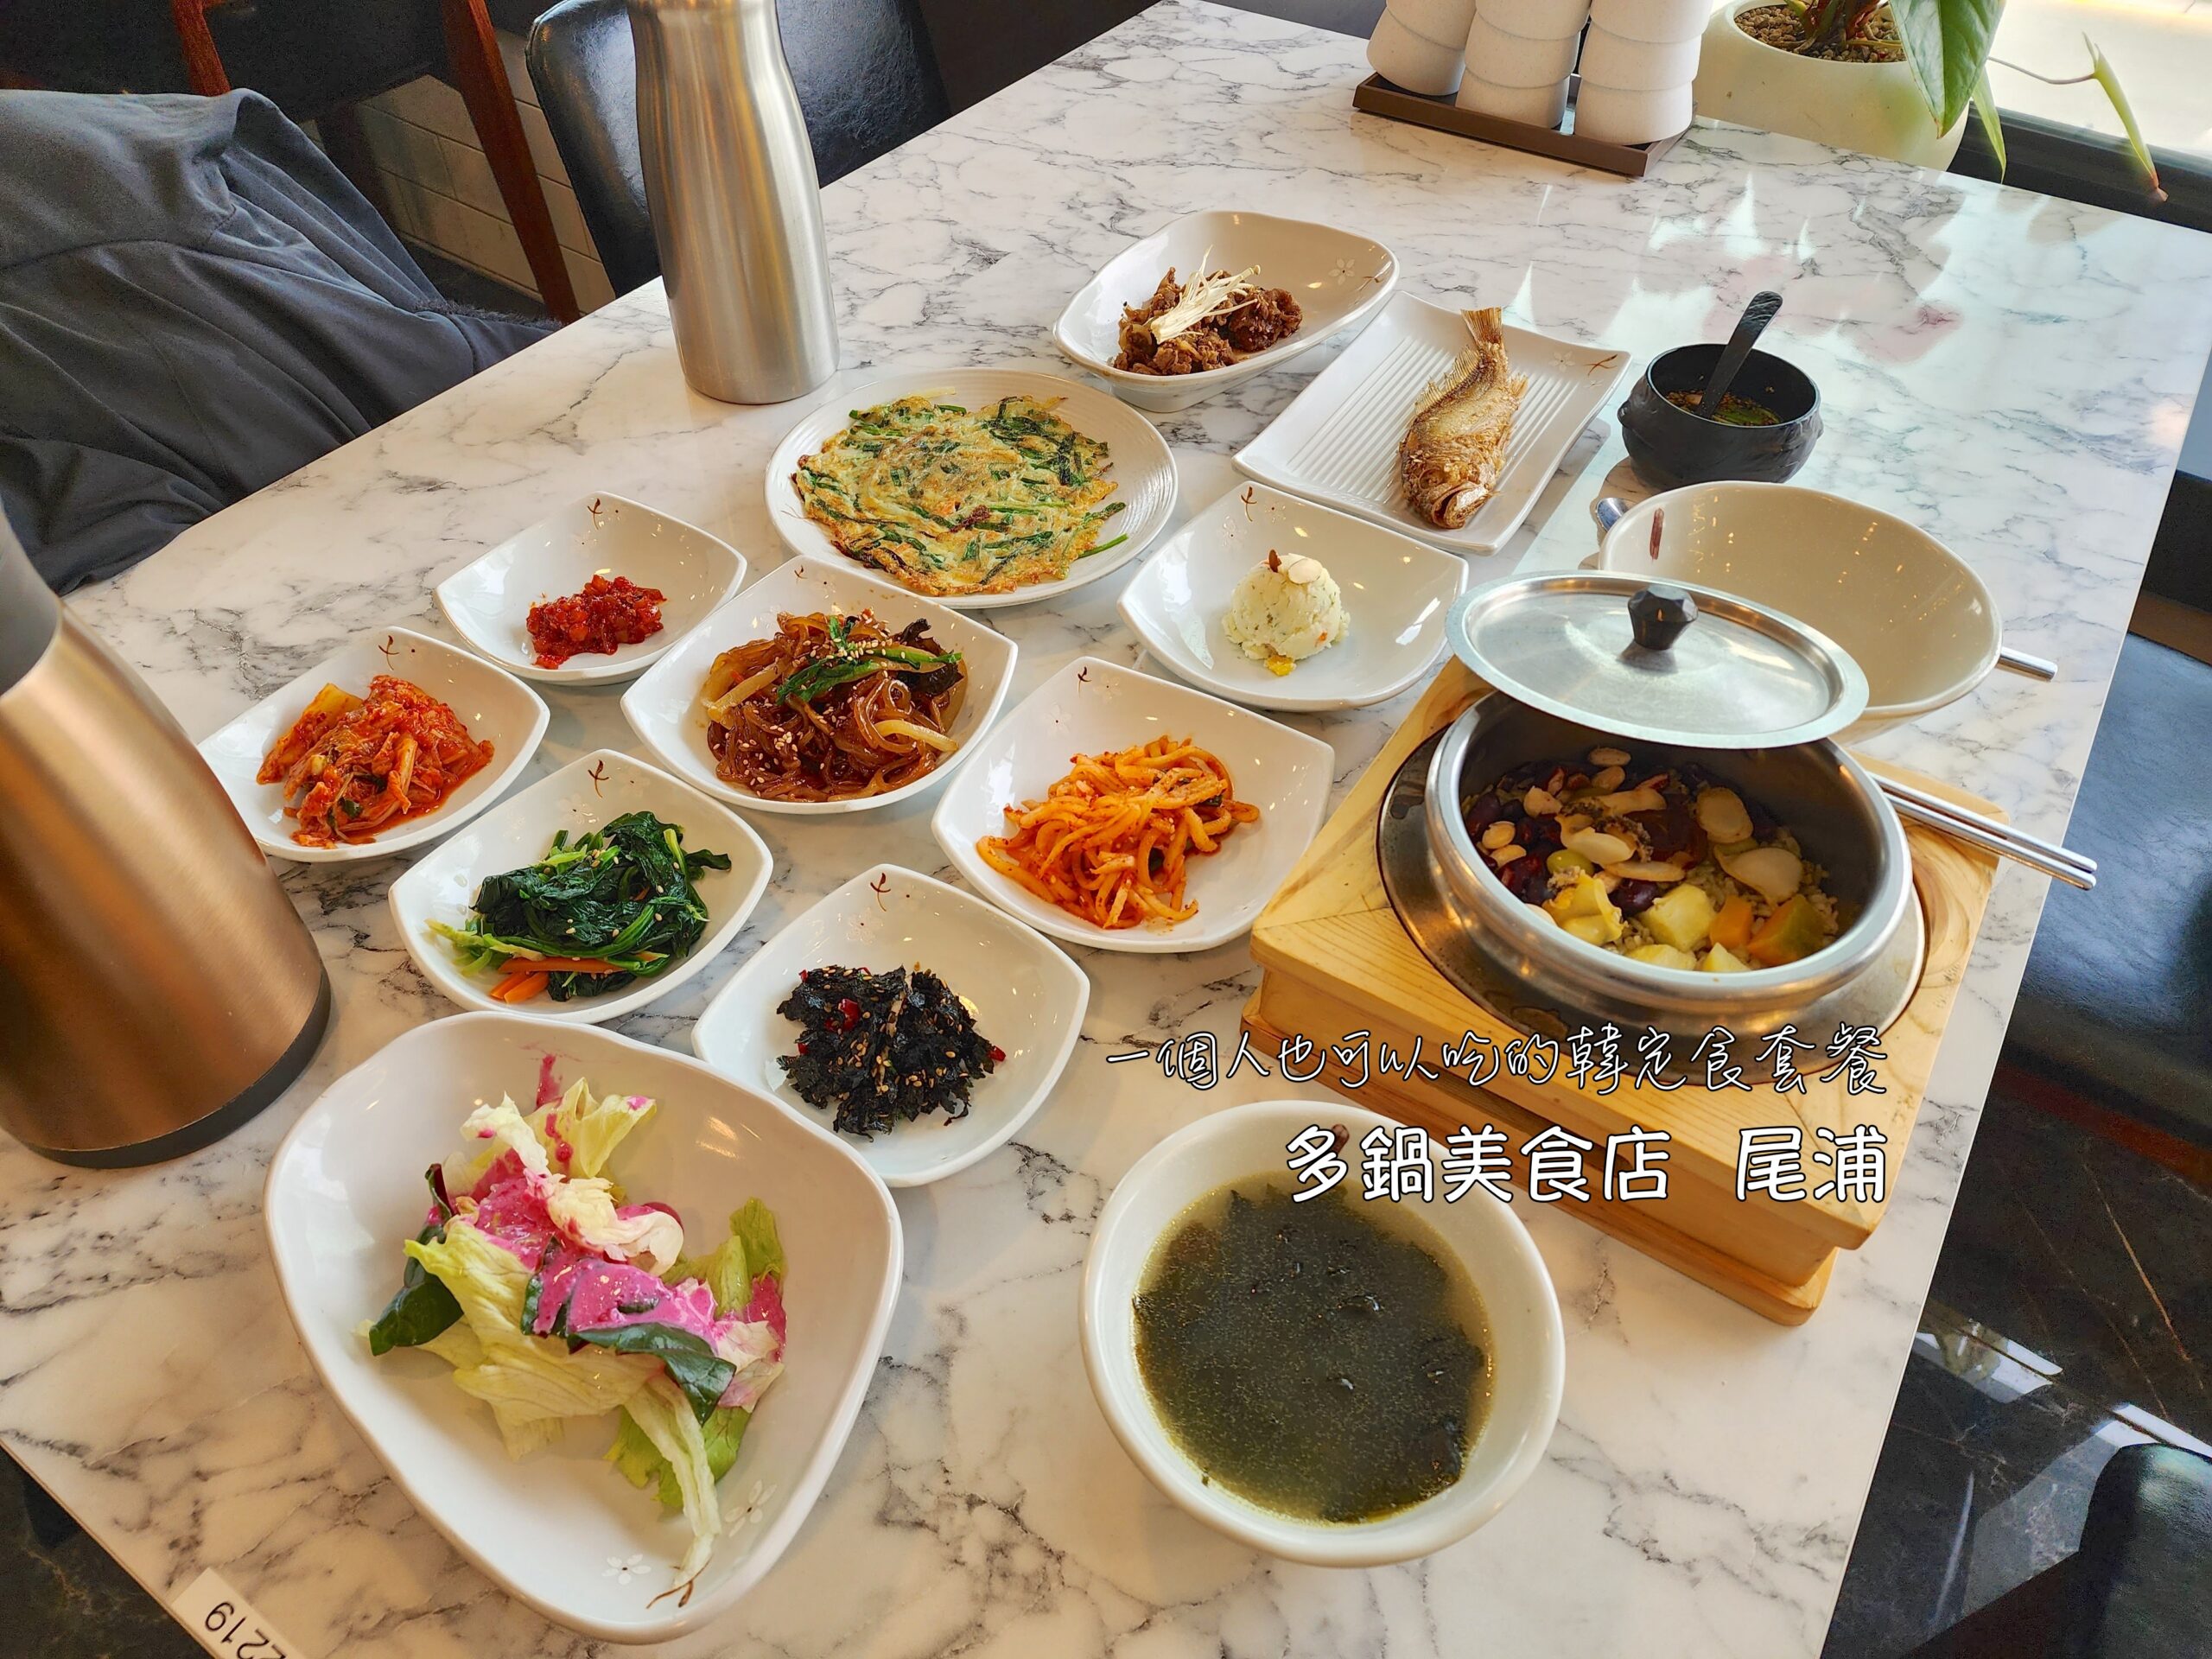 炸雞,美食,釜山,釜山大學,韓國 @Helena's Blog